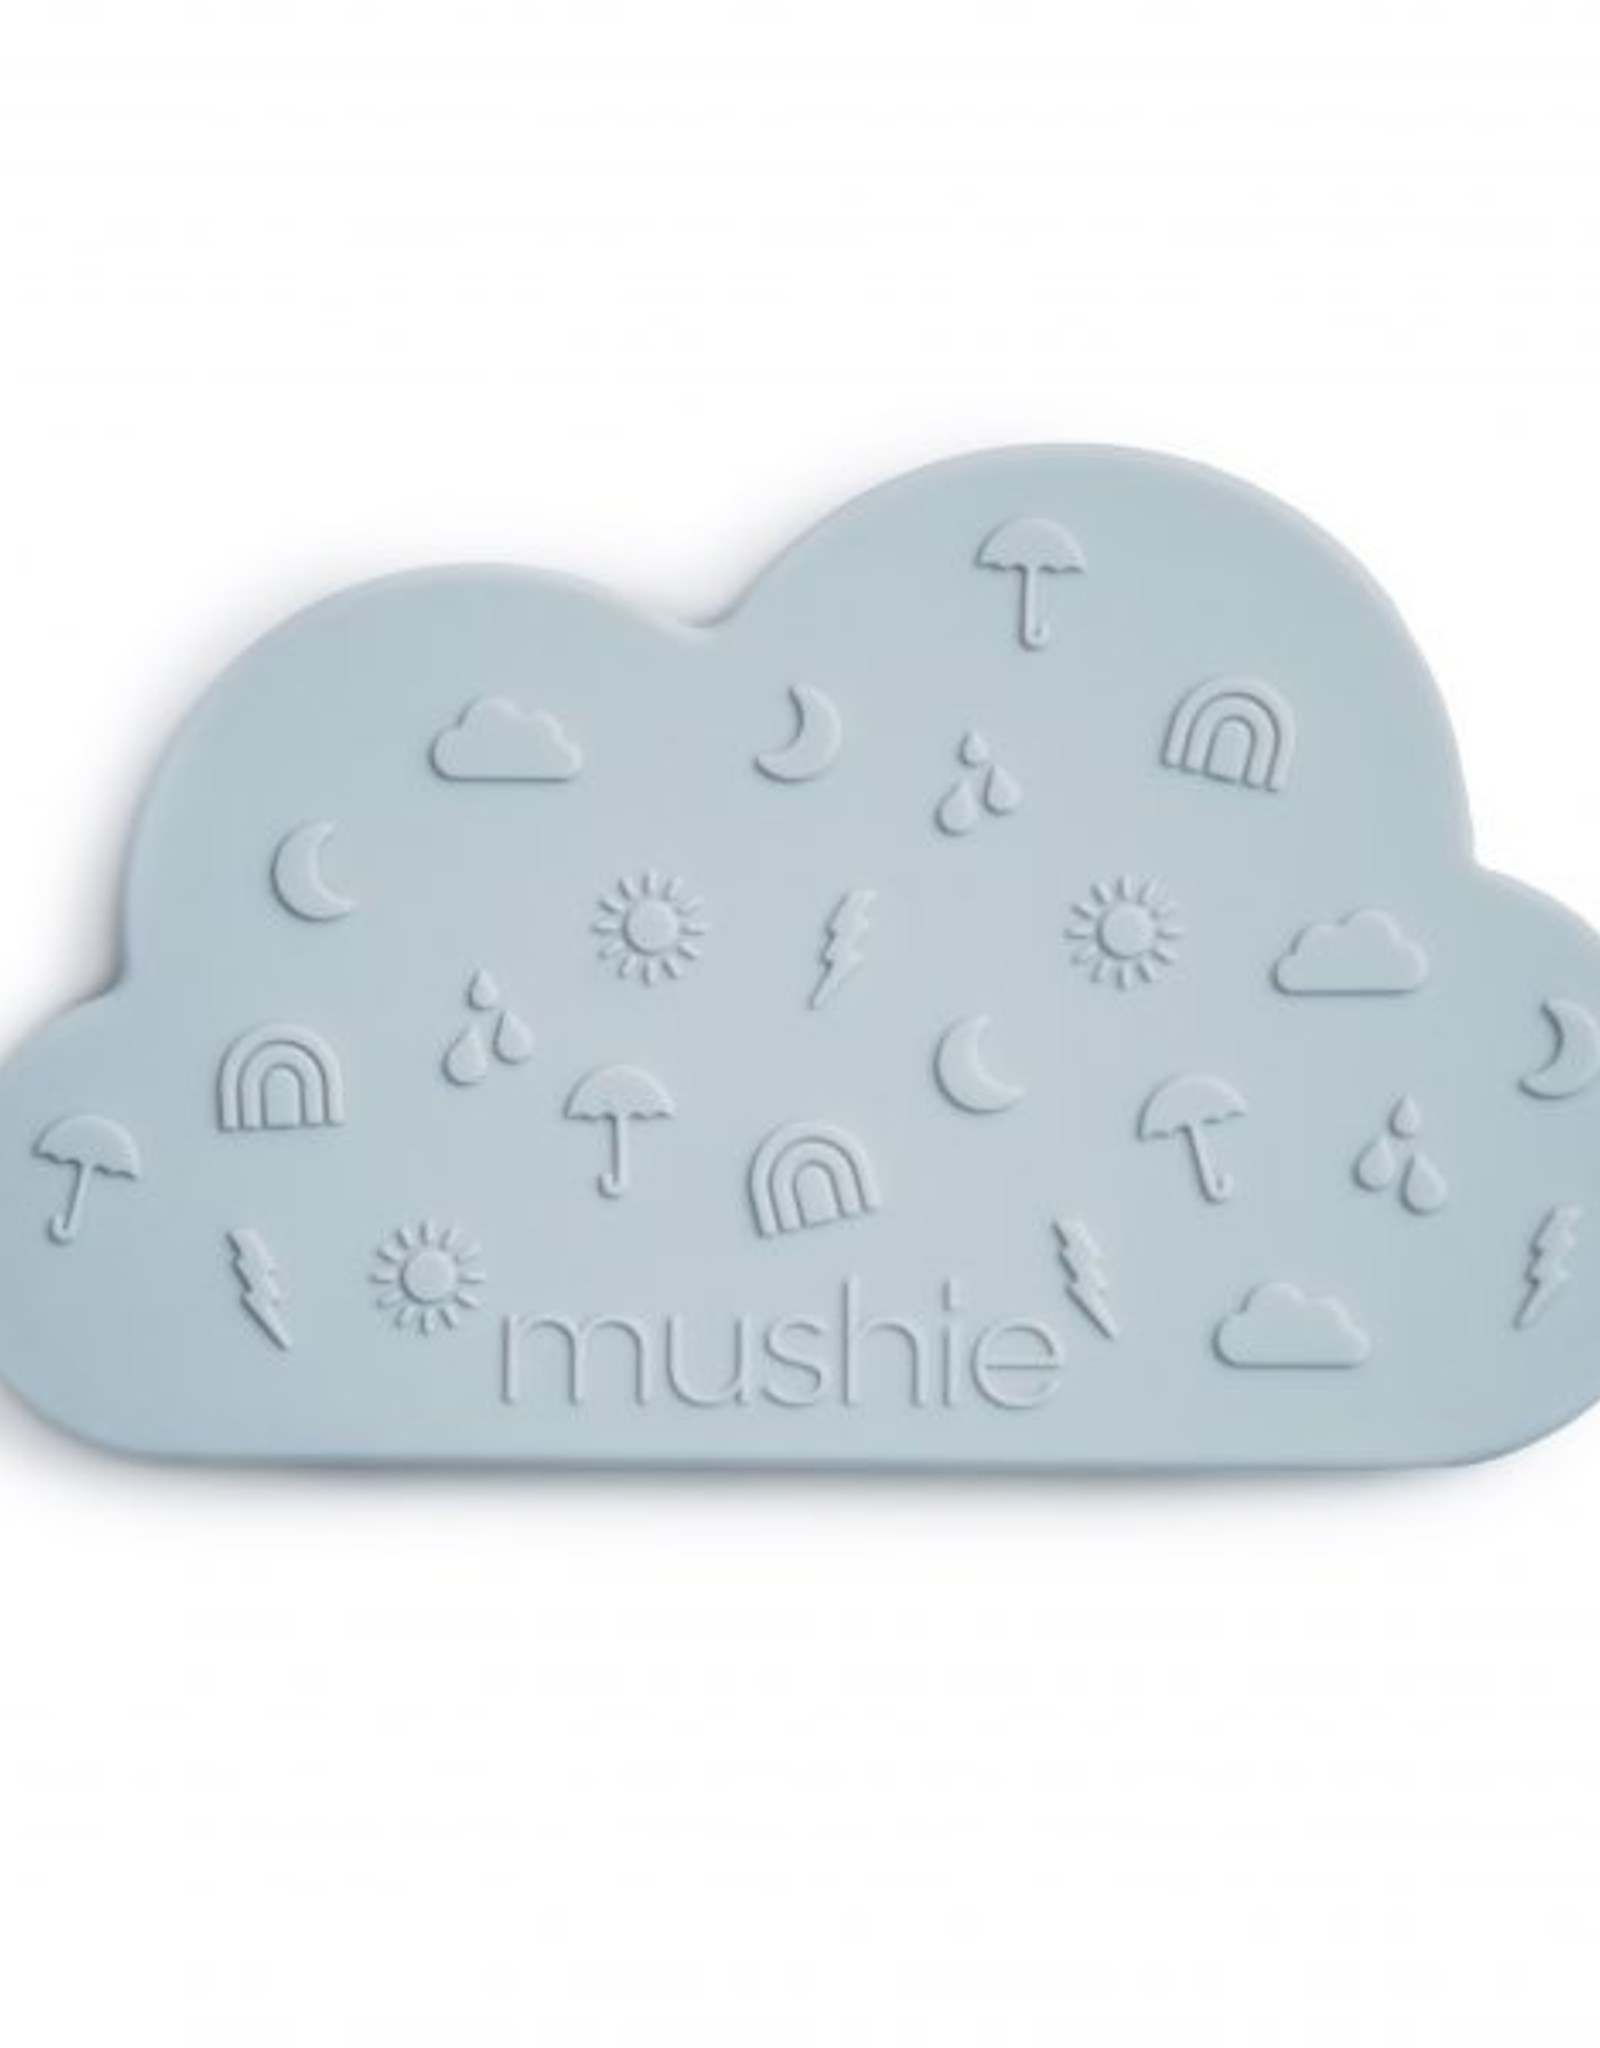 Mushie cloud teether